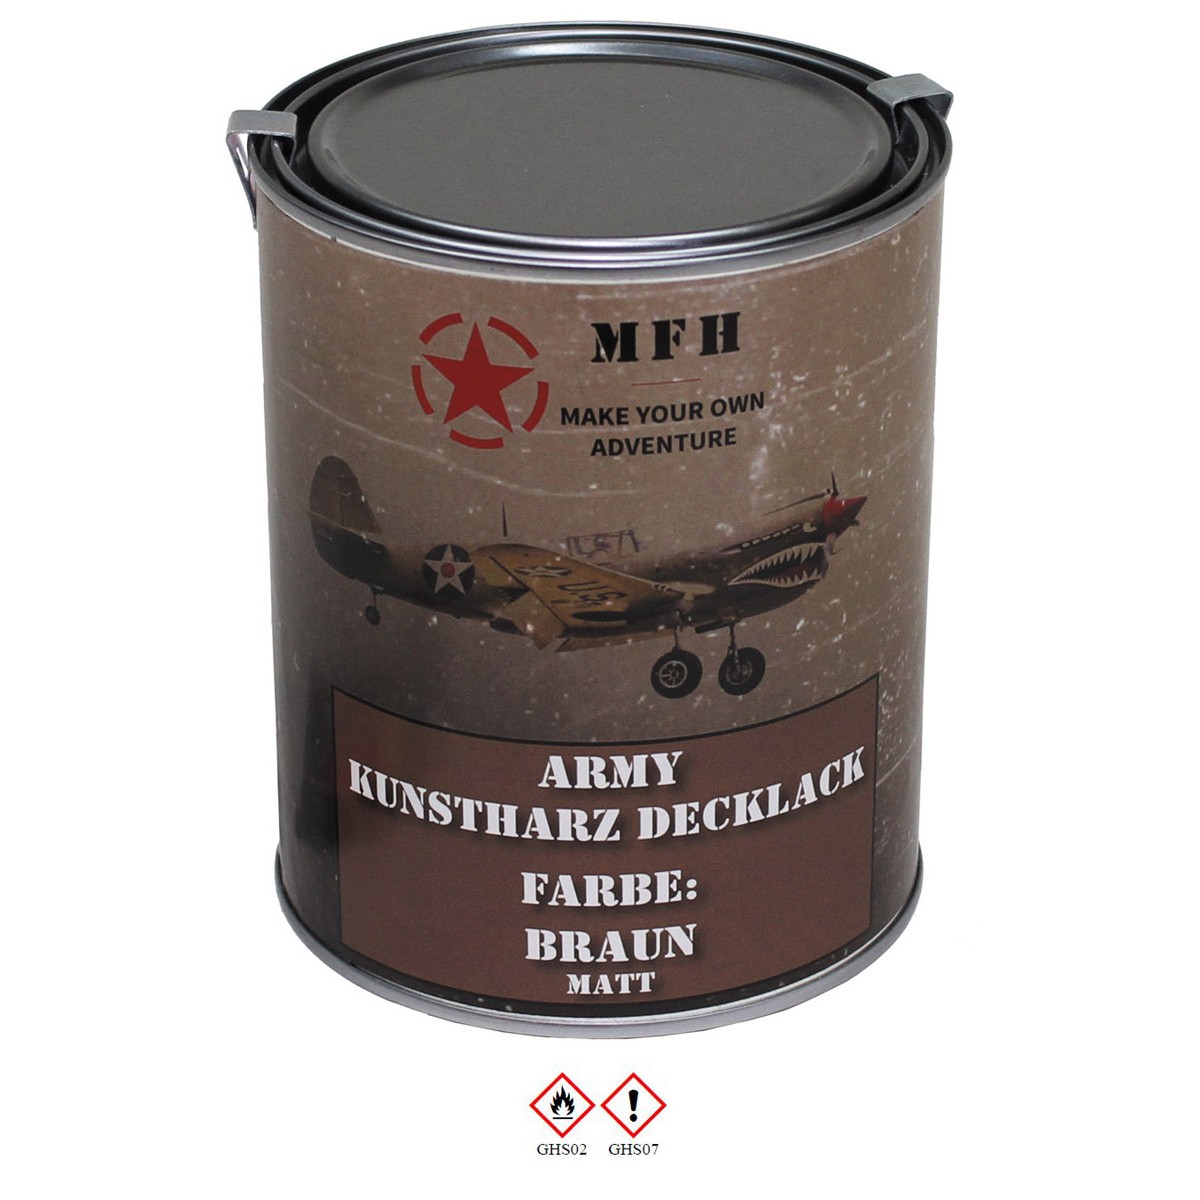 Farbdose "Army" BRAUN matt Kunstharz Decklack 1 Liter